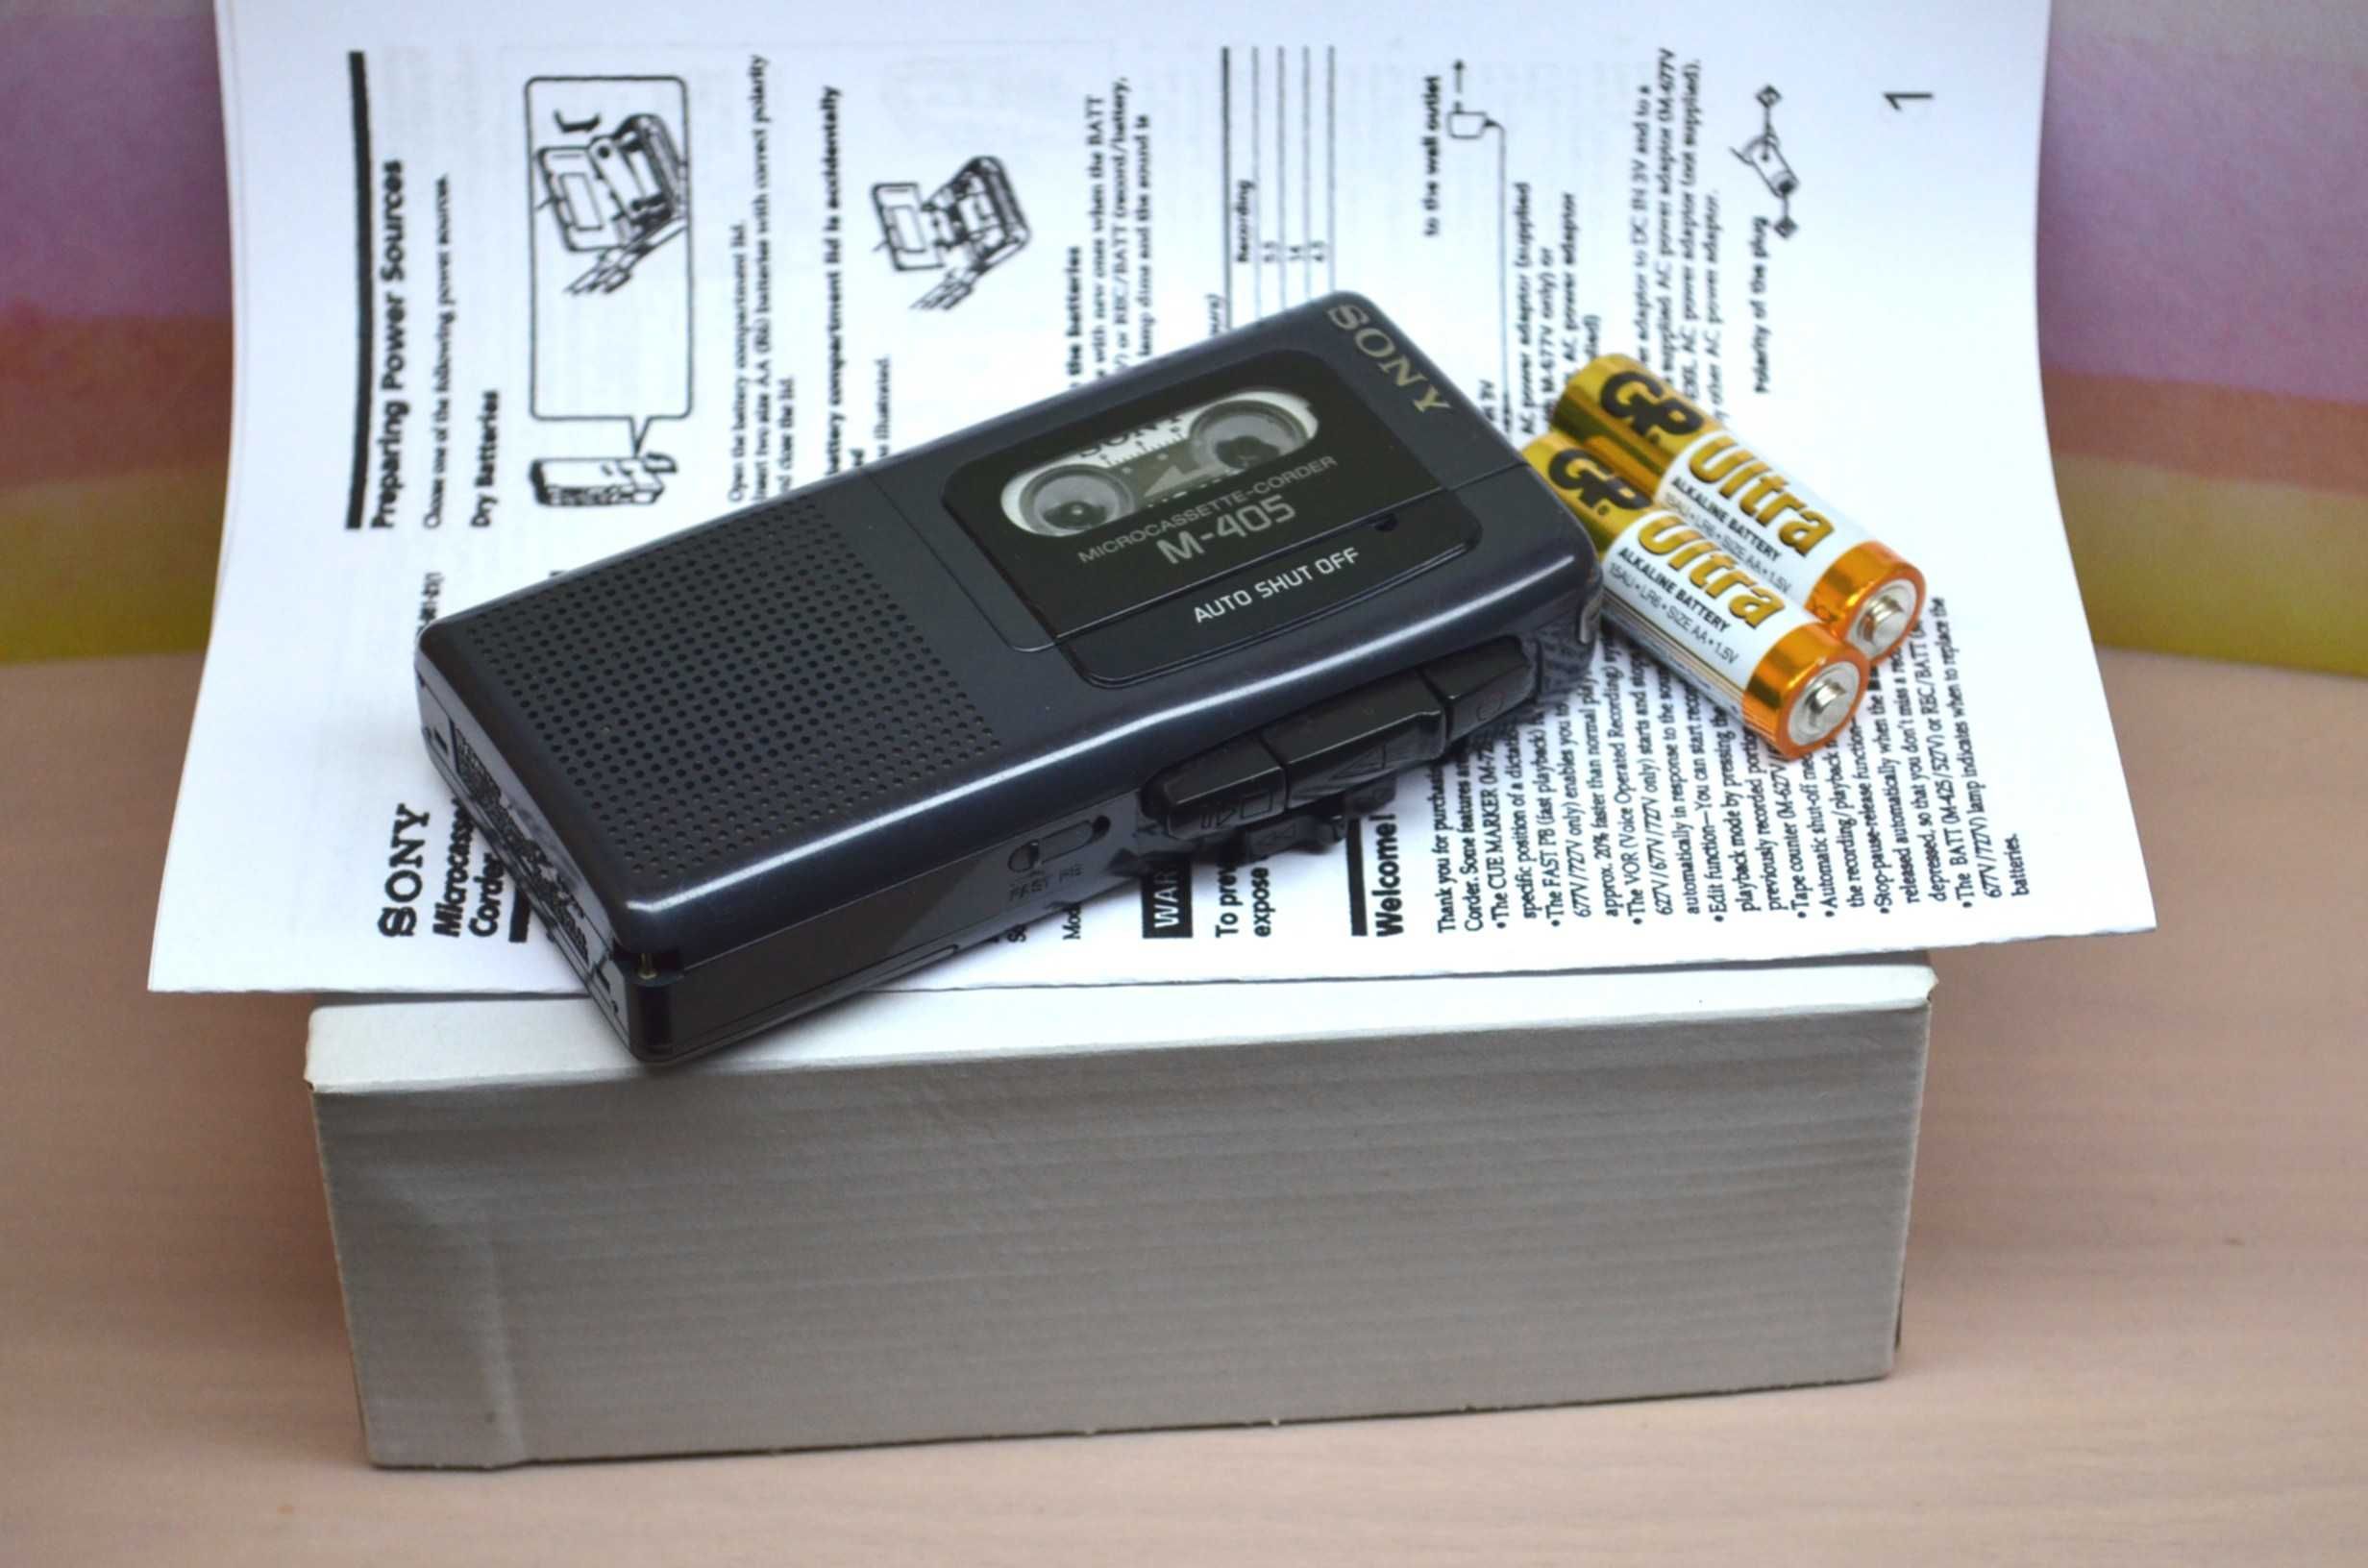 dyktafon SONY M-405 + kaseta Sony MC-60 pudełko sprawny sprawdzony